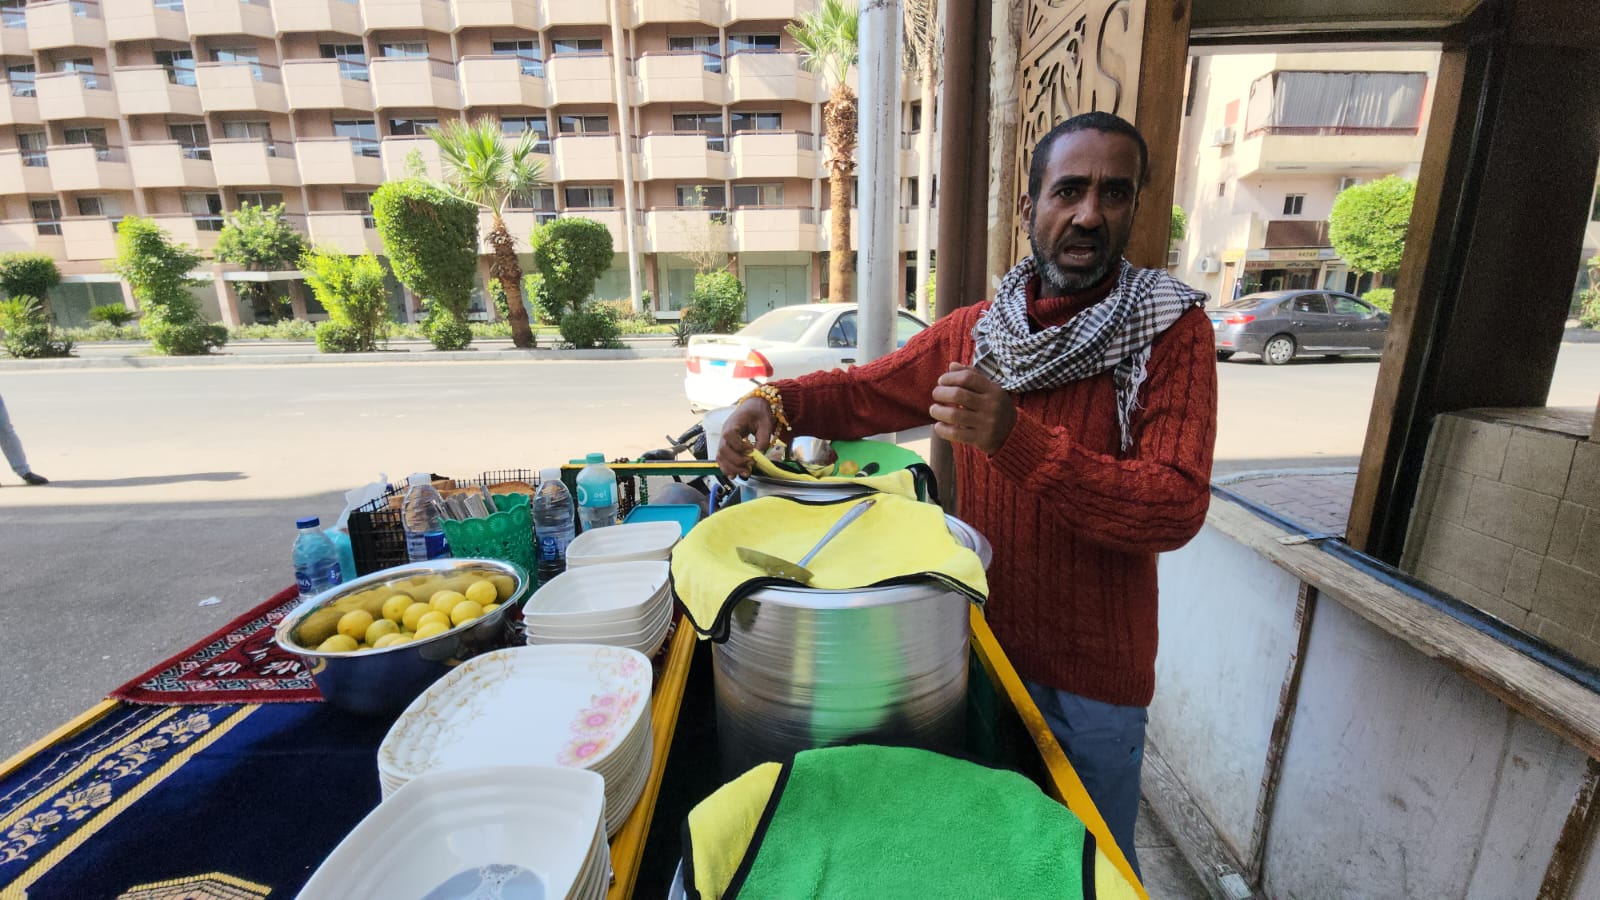 محمود يشرح قصته مع عربة مأكولات الشتاء الدافئة